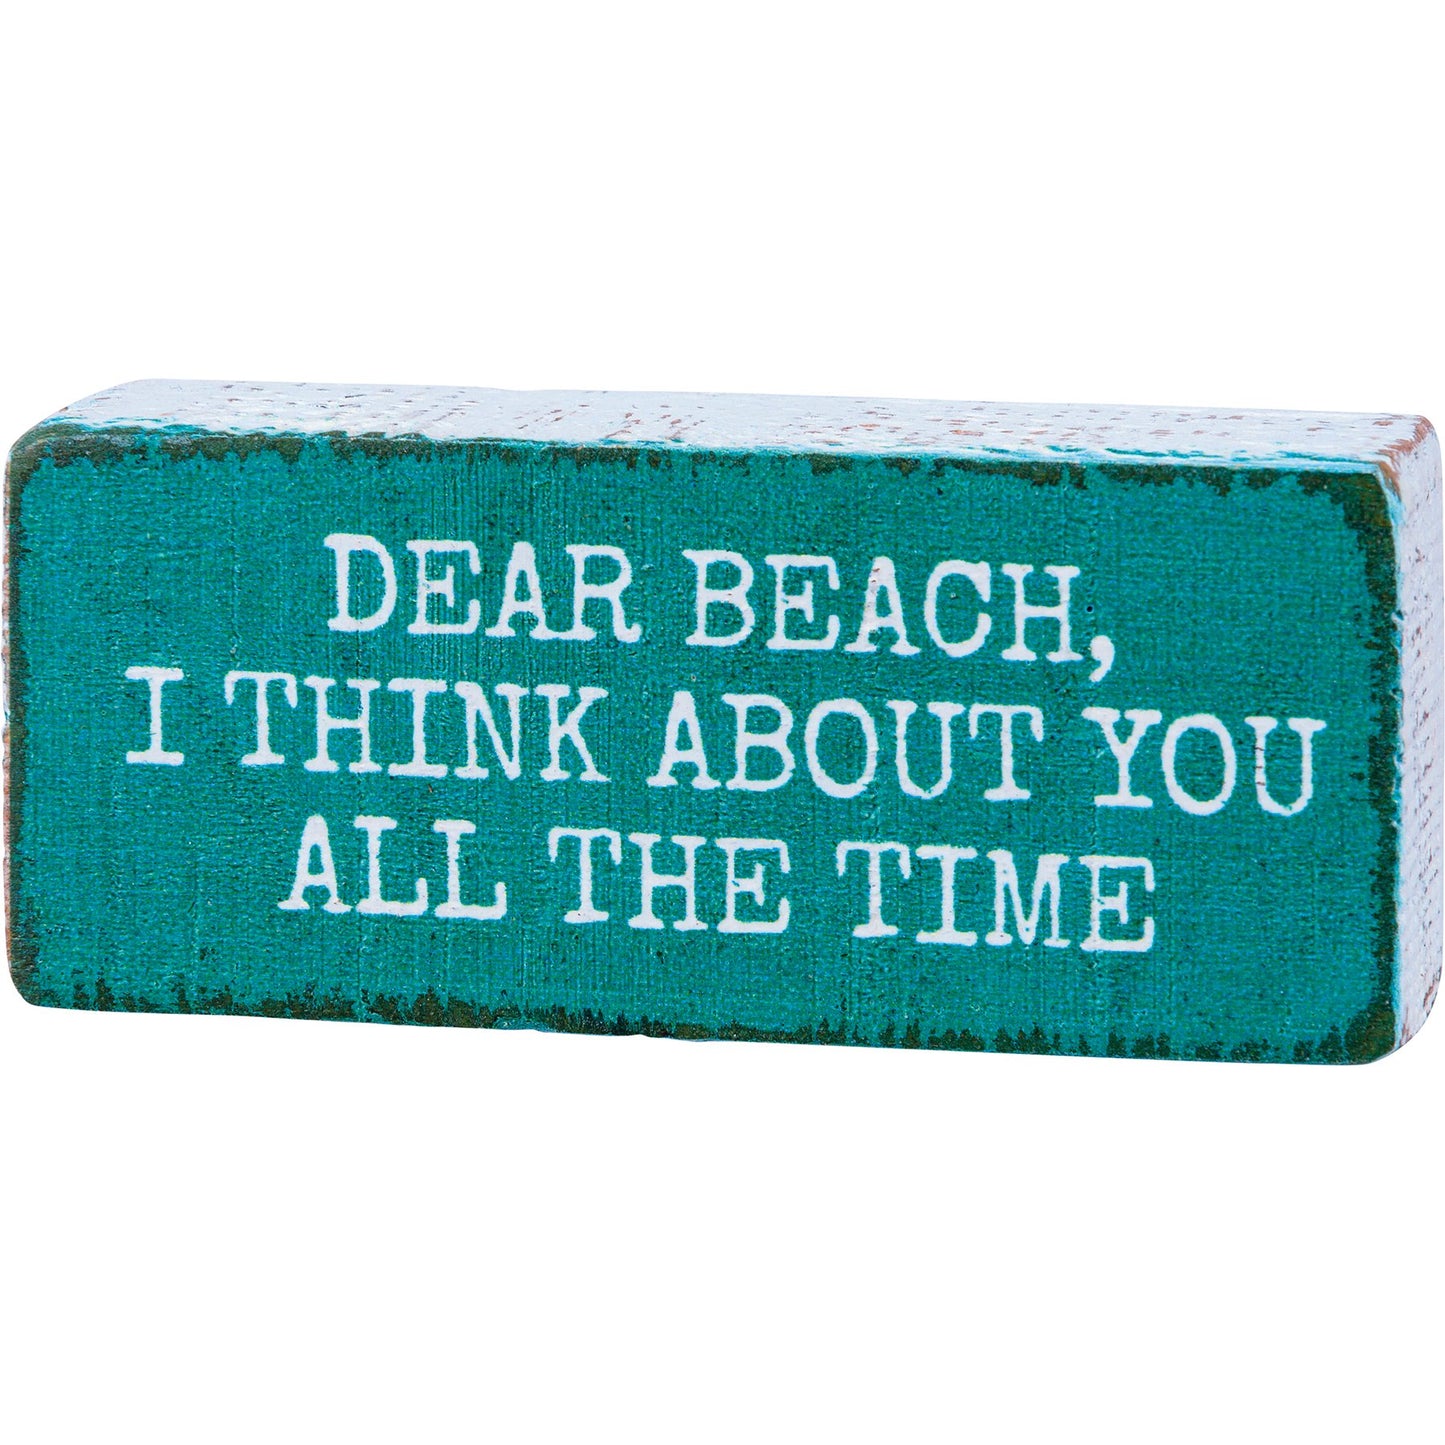 Dear Beach - Drifts East